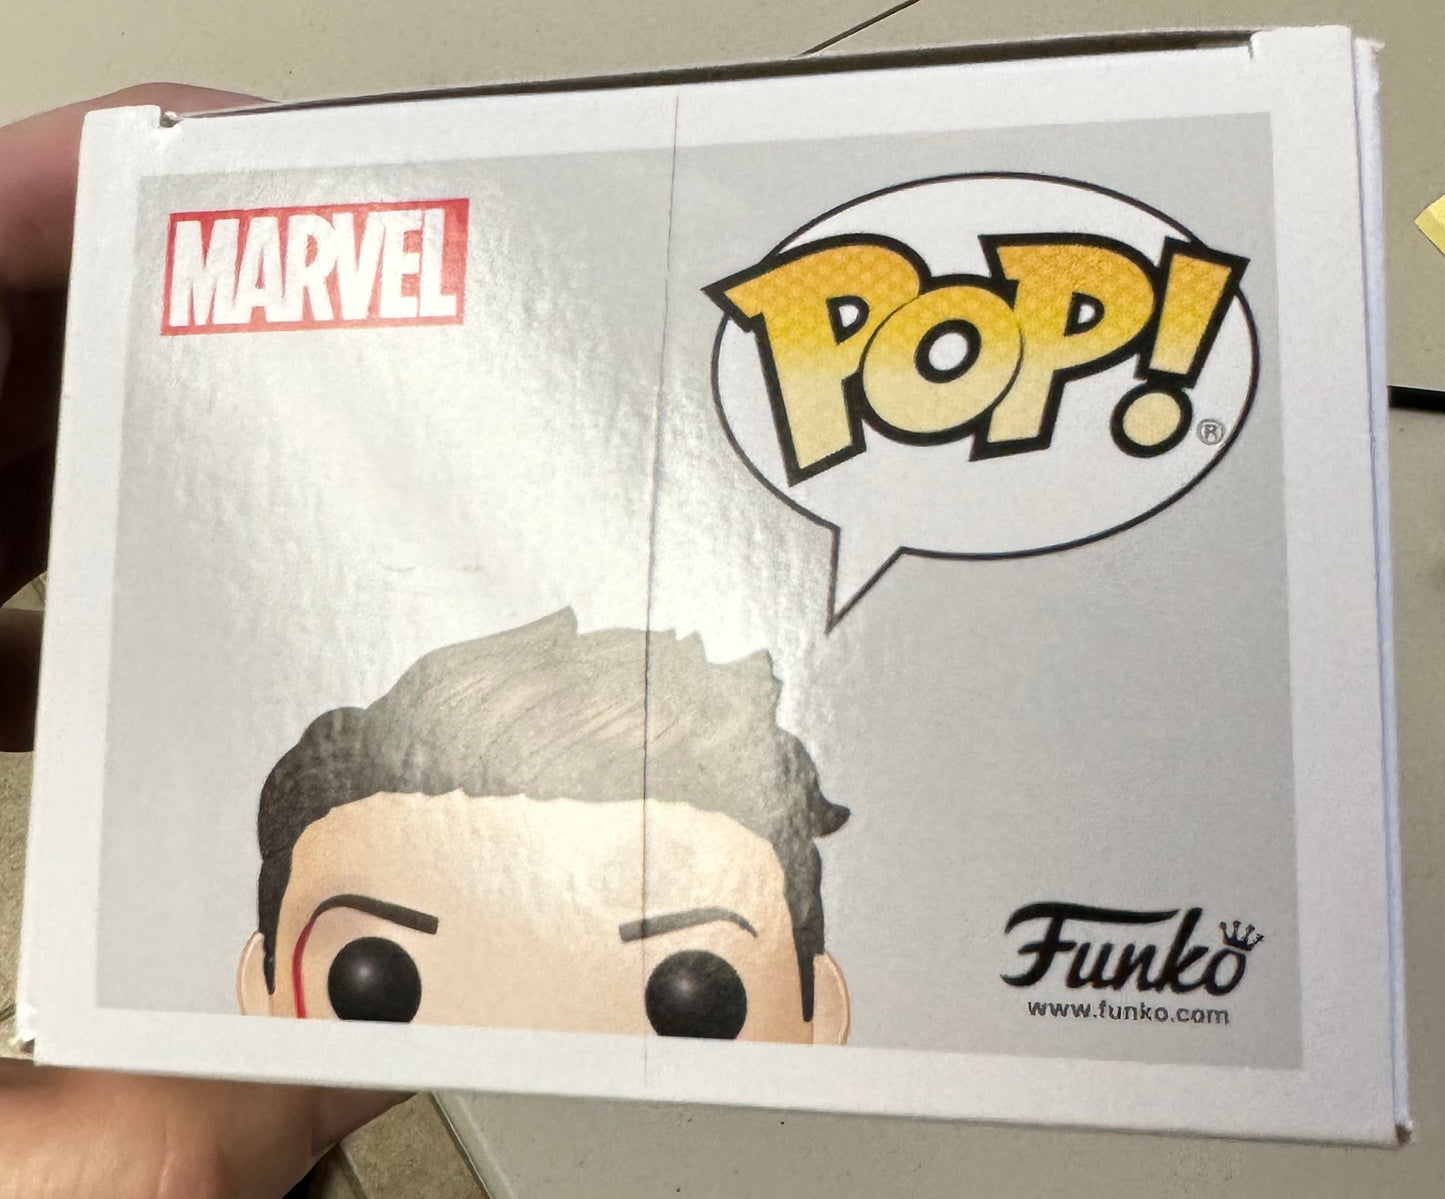 
                  
                    Robert Downey Jr. as Iron Man in Marvel's Avengers: Endgame Signed POP! Funko
                  
                